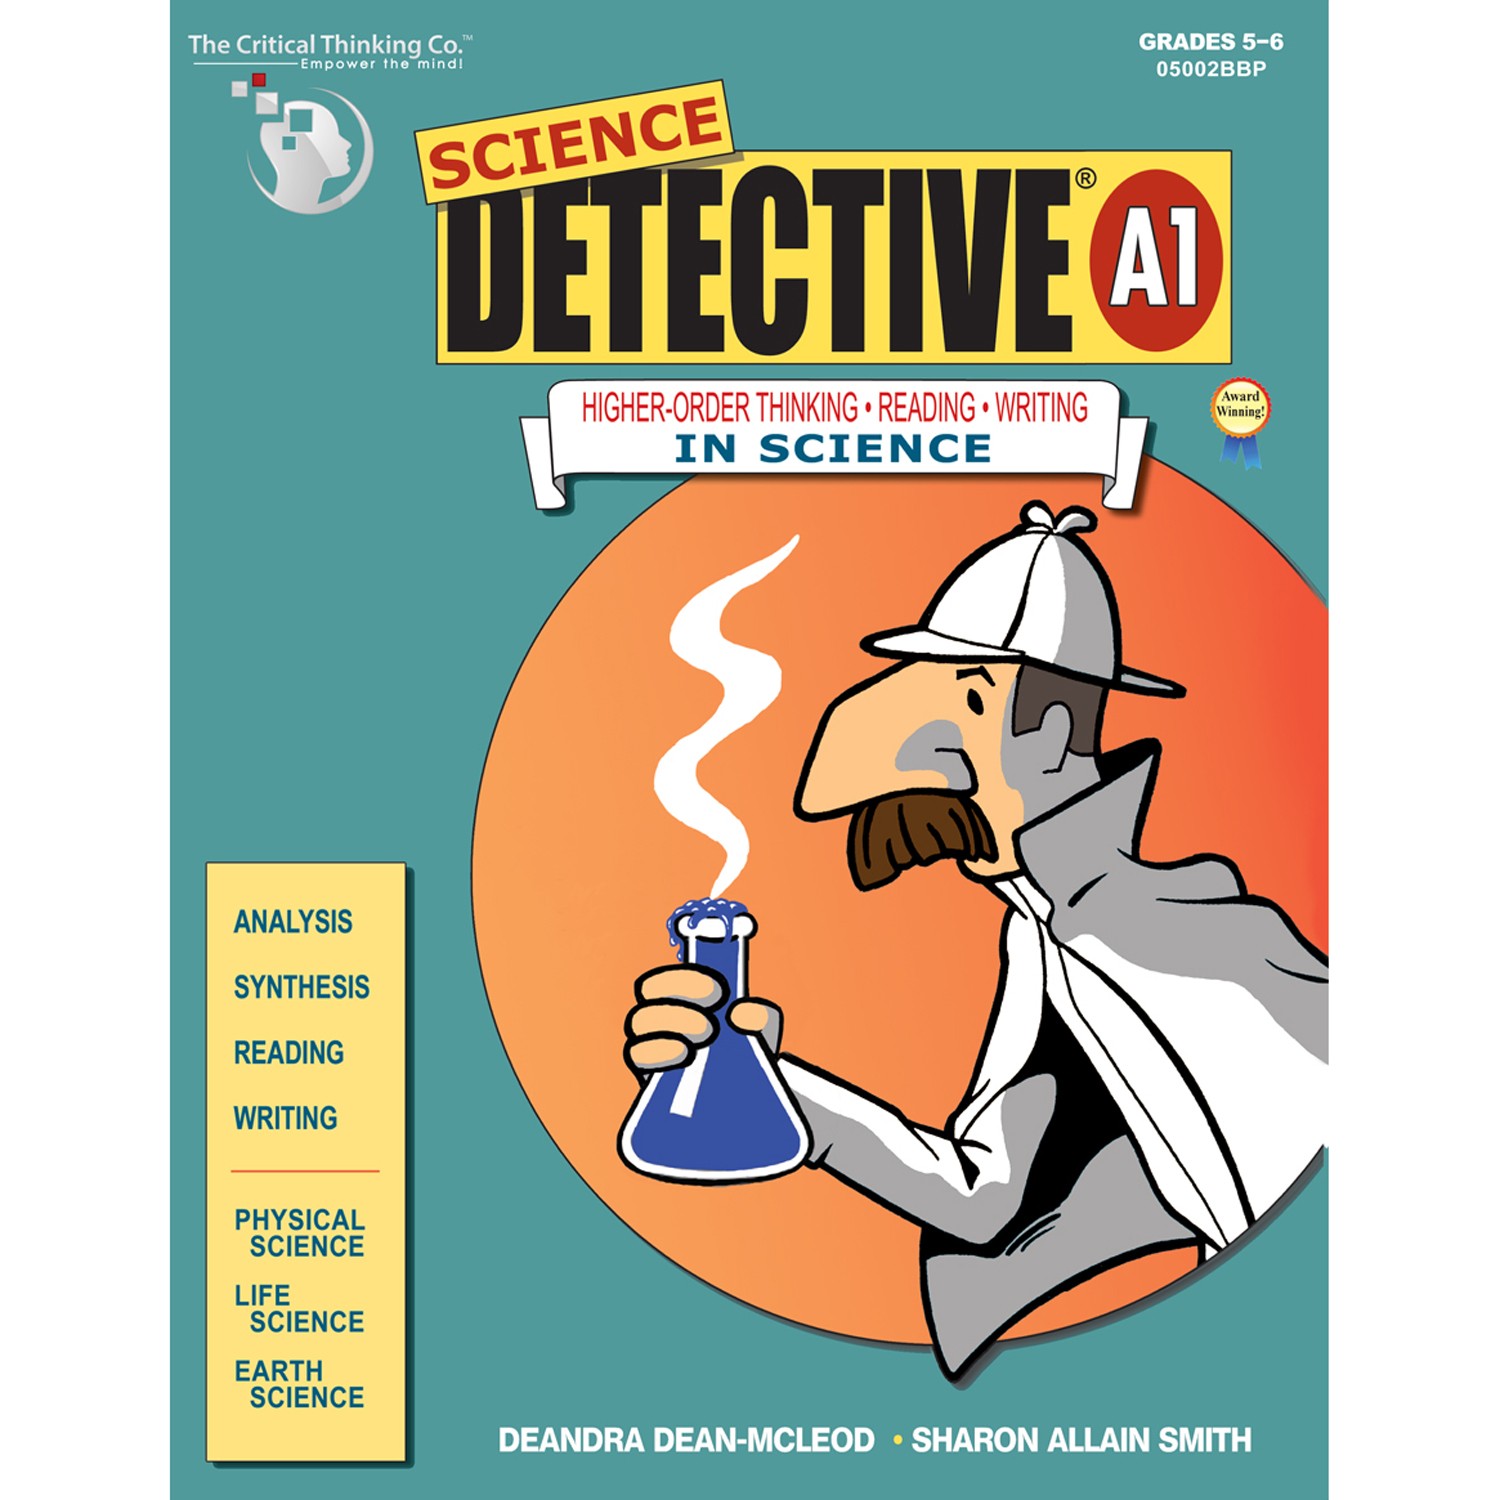 Science Detective A1, Grade 5-6